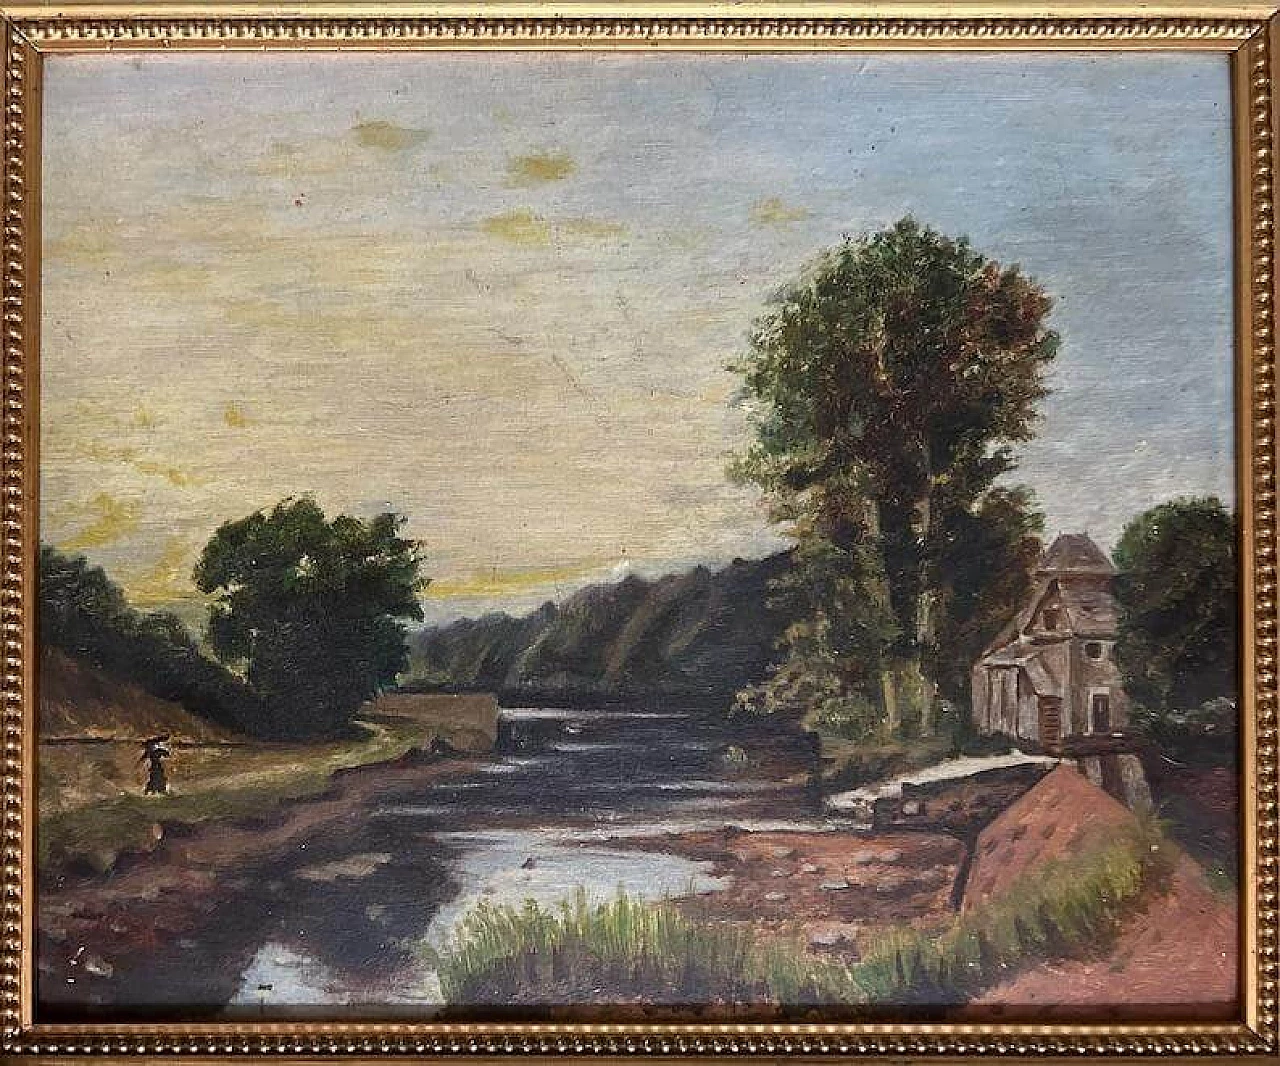 Paesaggio lacustre nello stile della Scuola di Barbizon, dipinto, anni '20 12